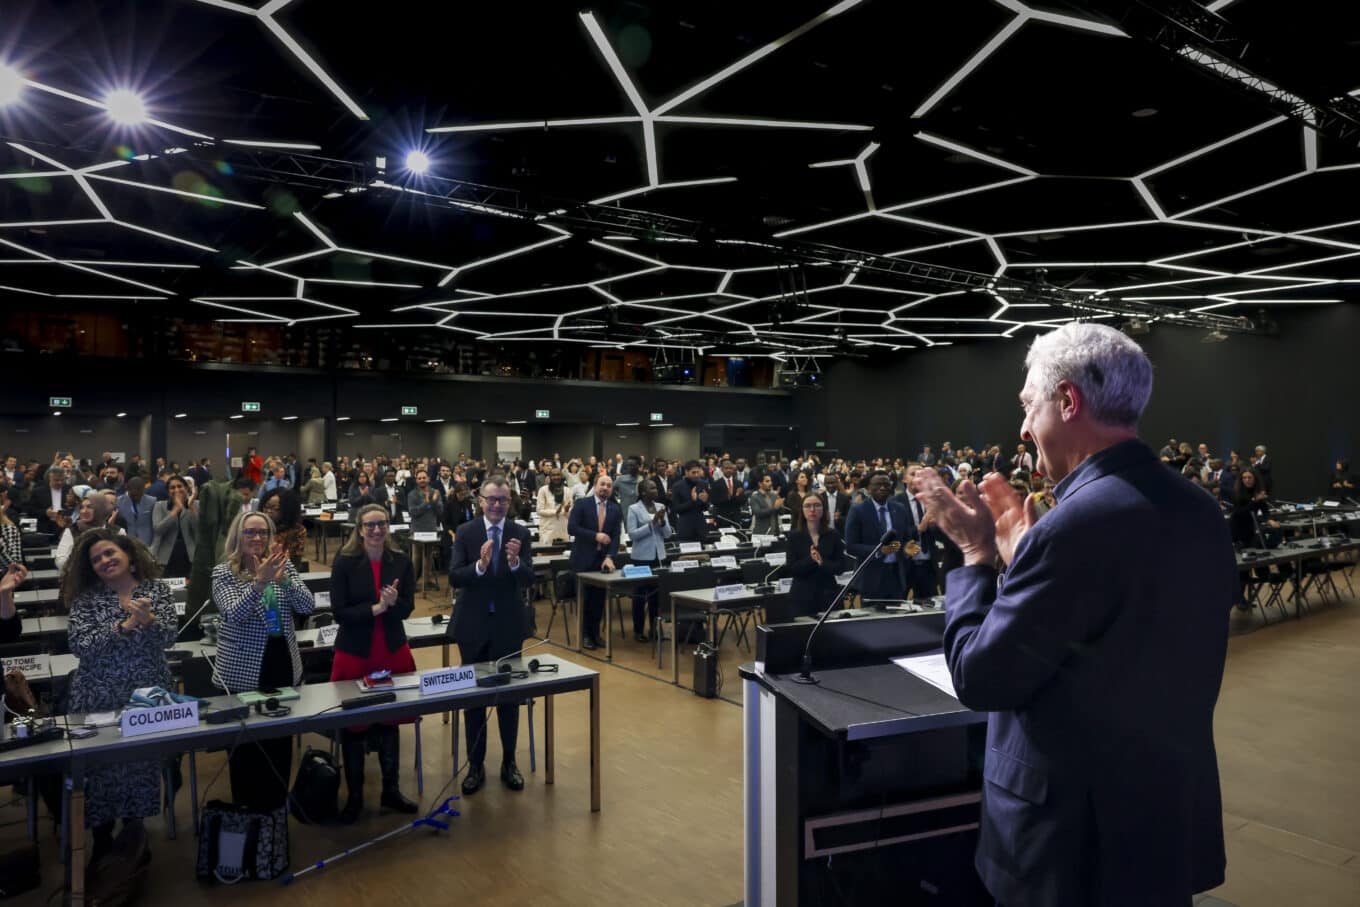 Le Haut Commissaire des Nations Unies pour les réfugiés, Filippo Grandi, se tient devant un podium, applaudissant, dans une salle au ciel géographique noir, devant un parterre de dirigeants du monde entier. 